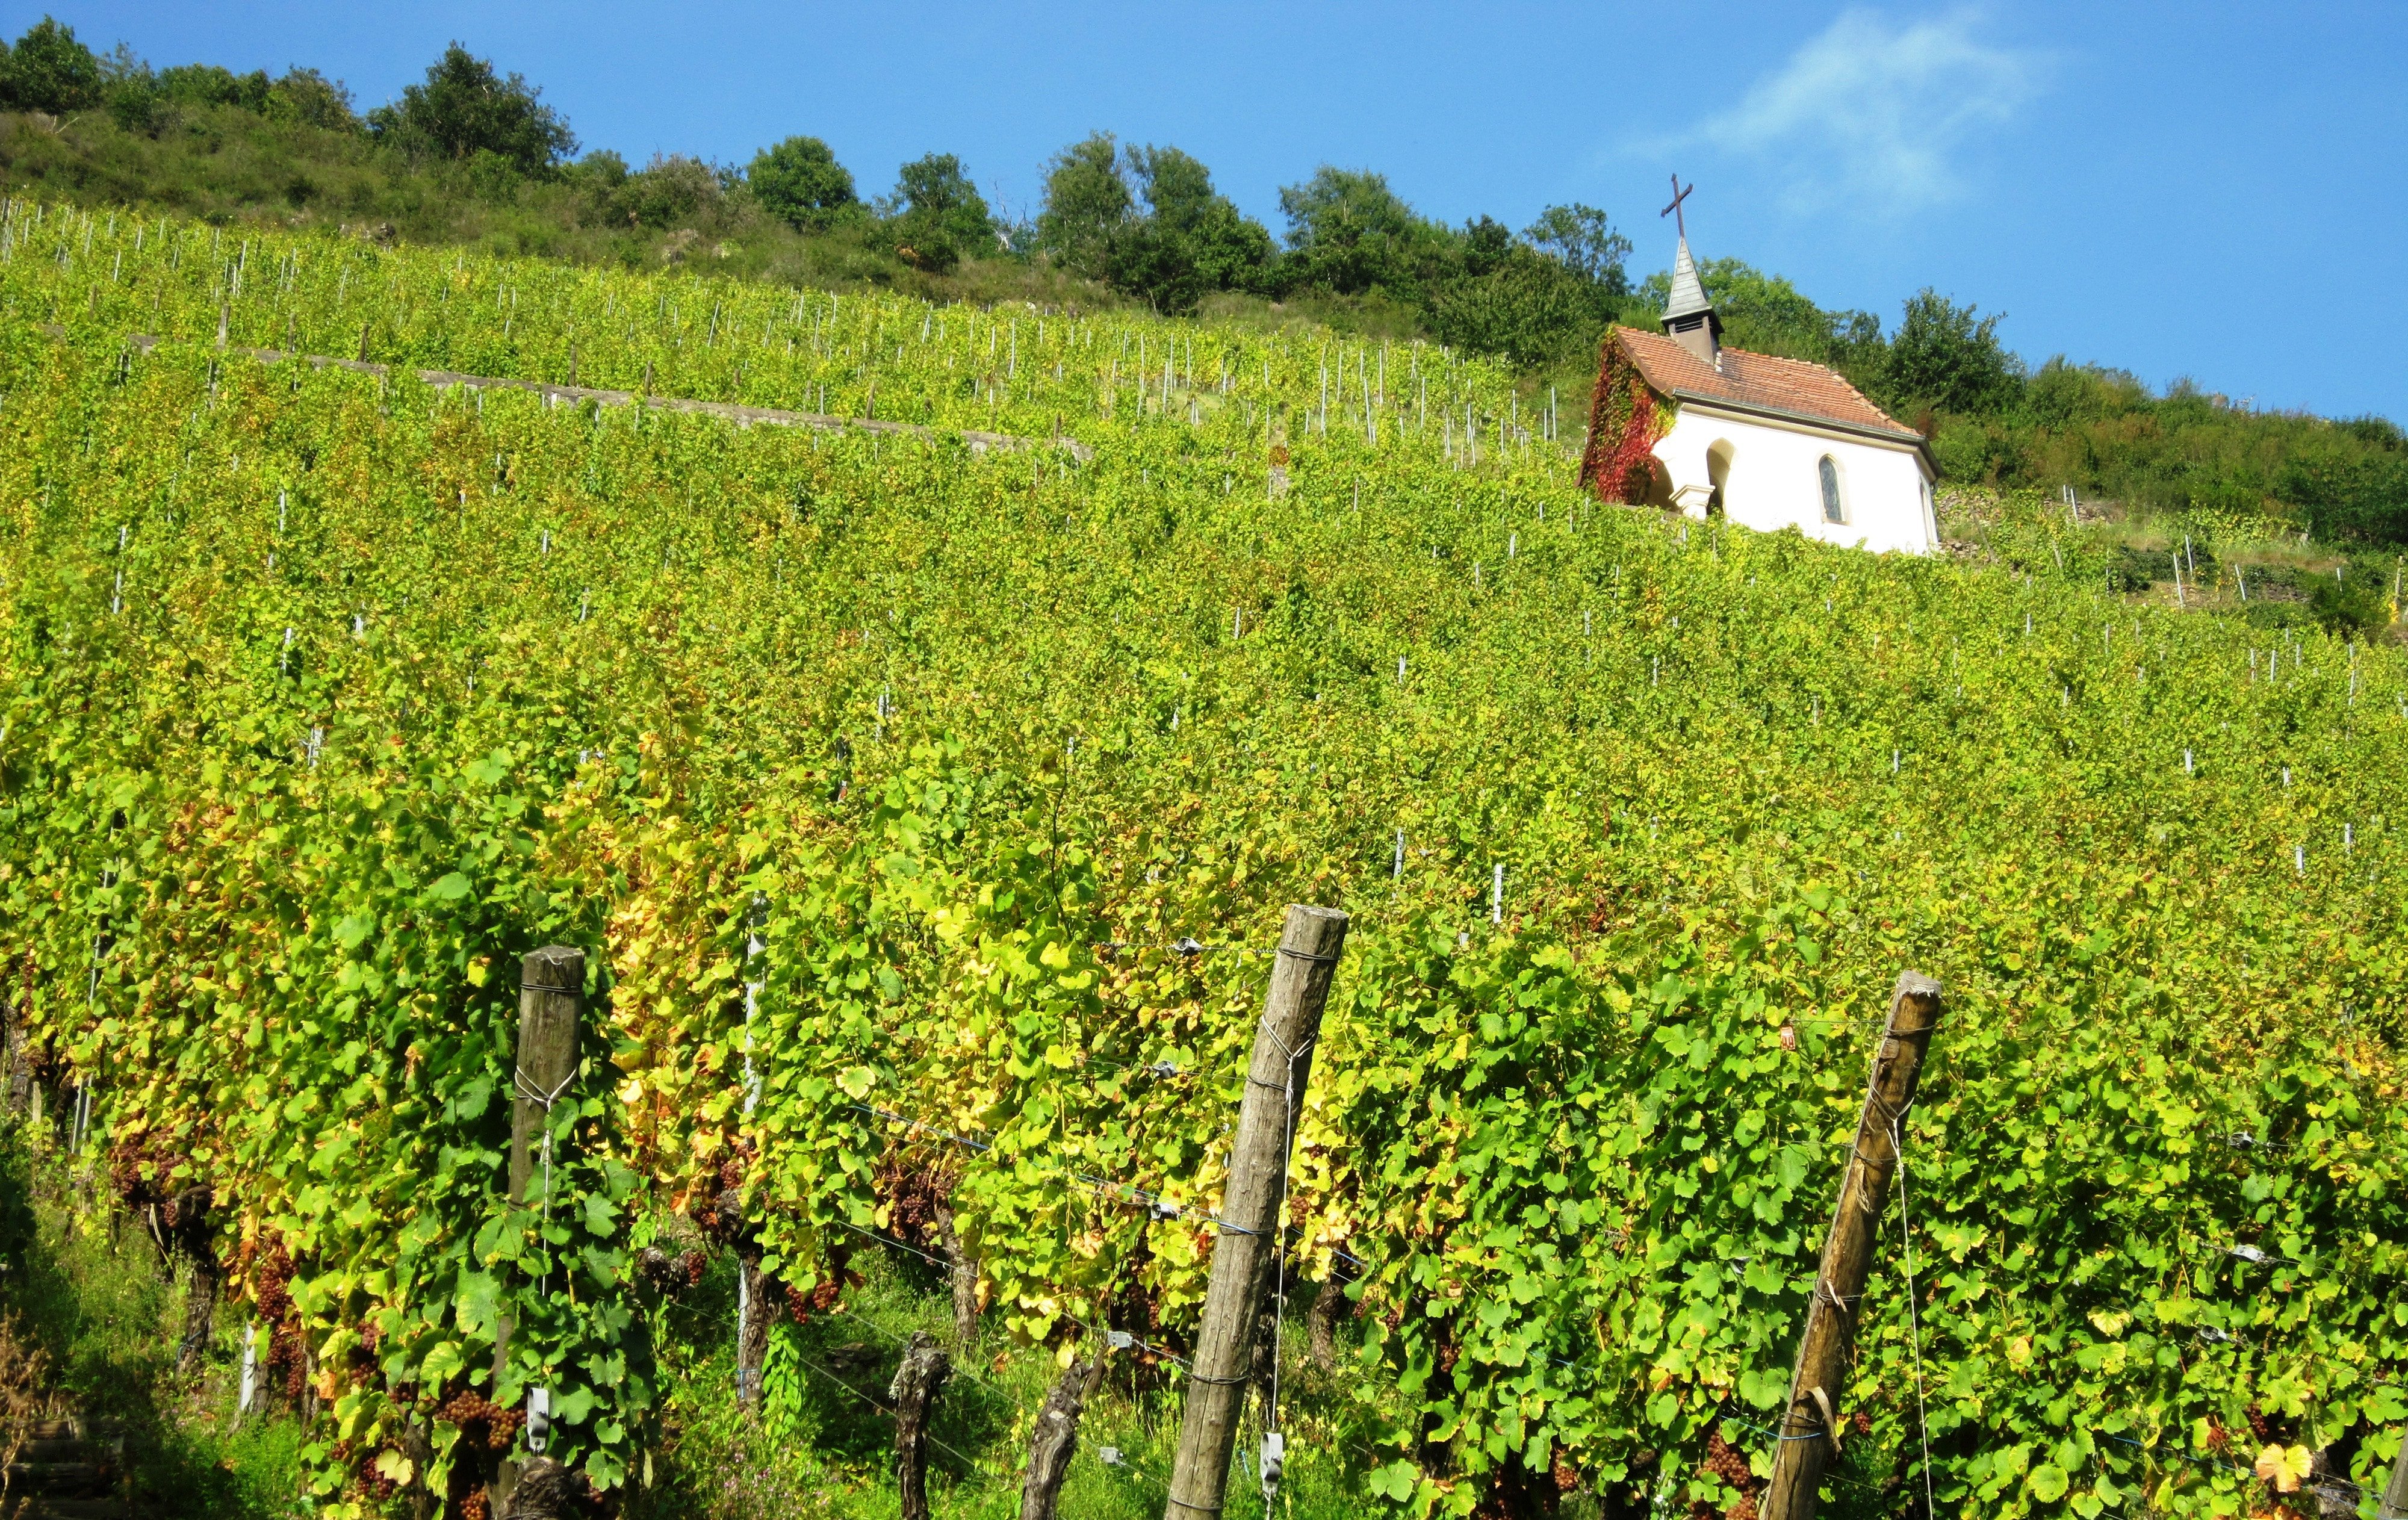 andreas fickl 1398038 unsplash.jpg?resize=1200,630 - Découvrez les 5 plus beaux villages sur la route des vins d'Alsace